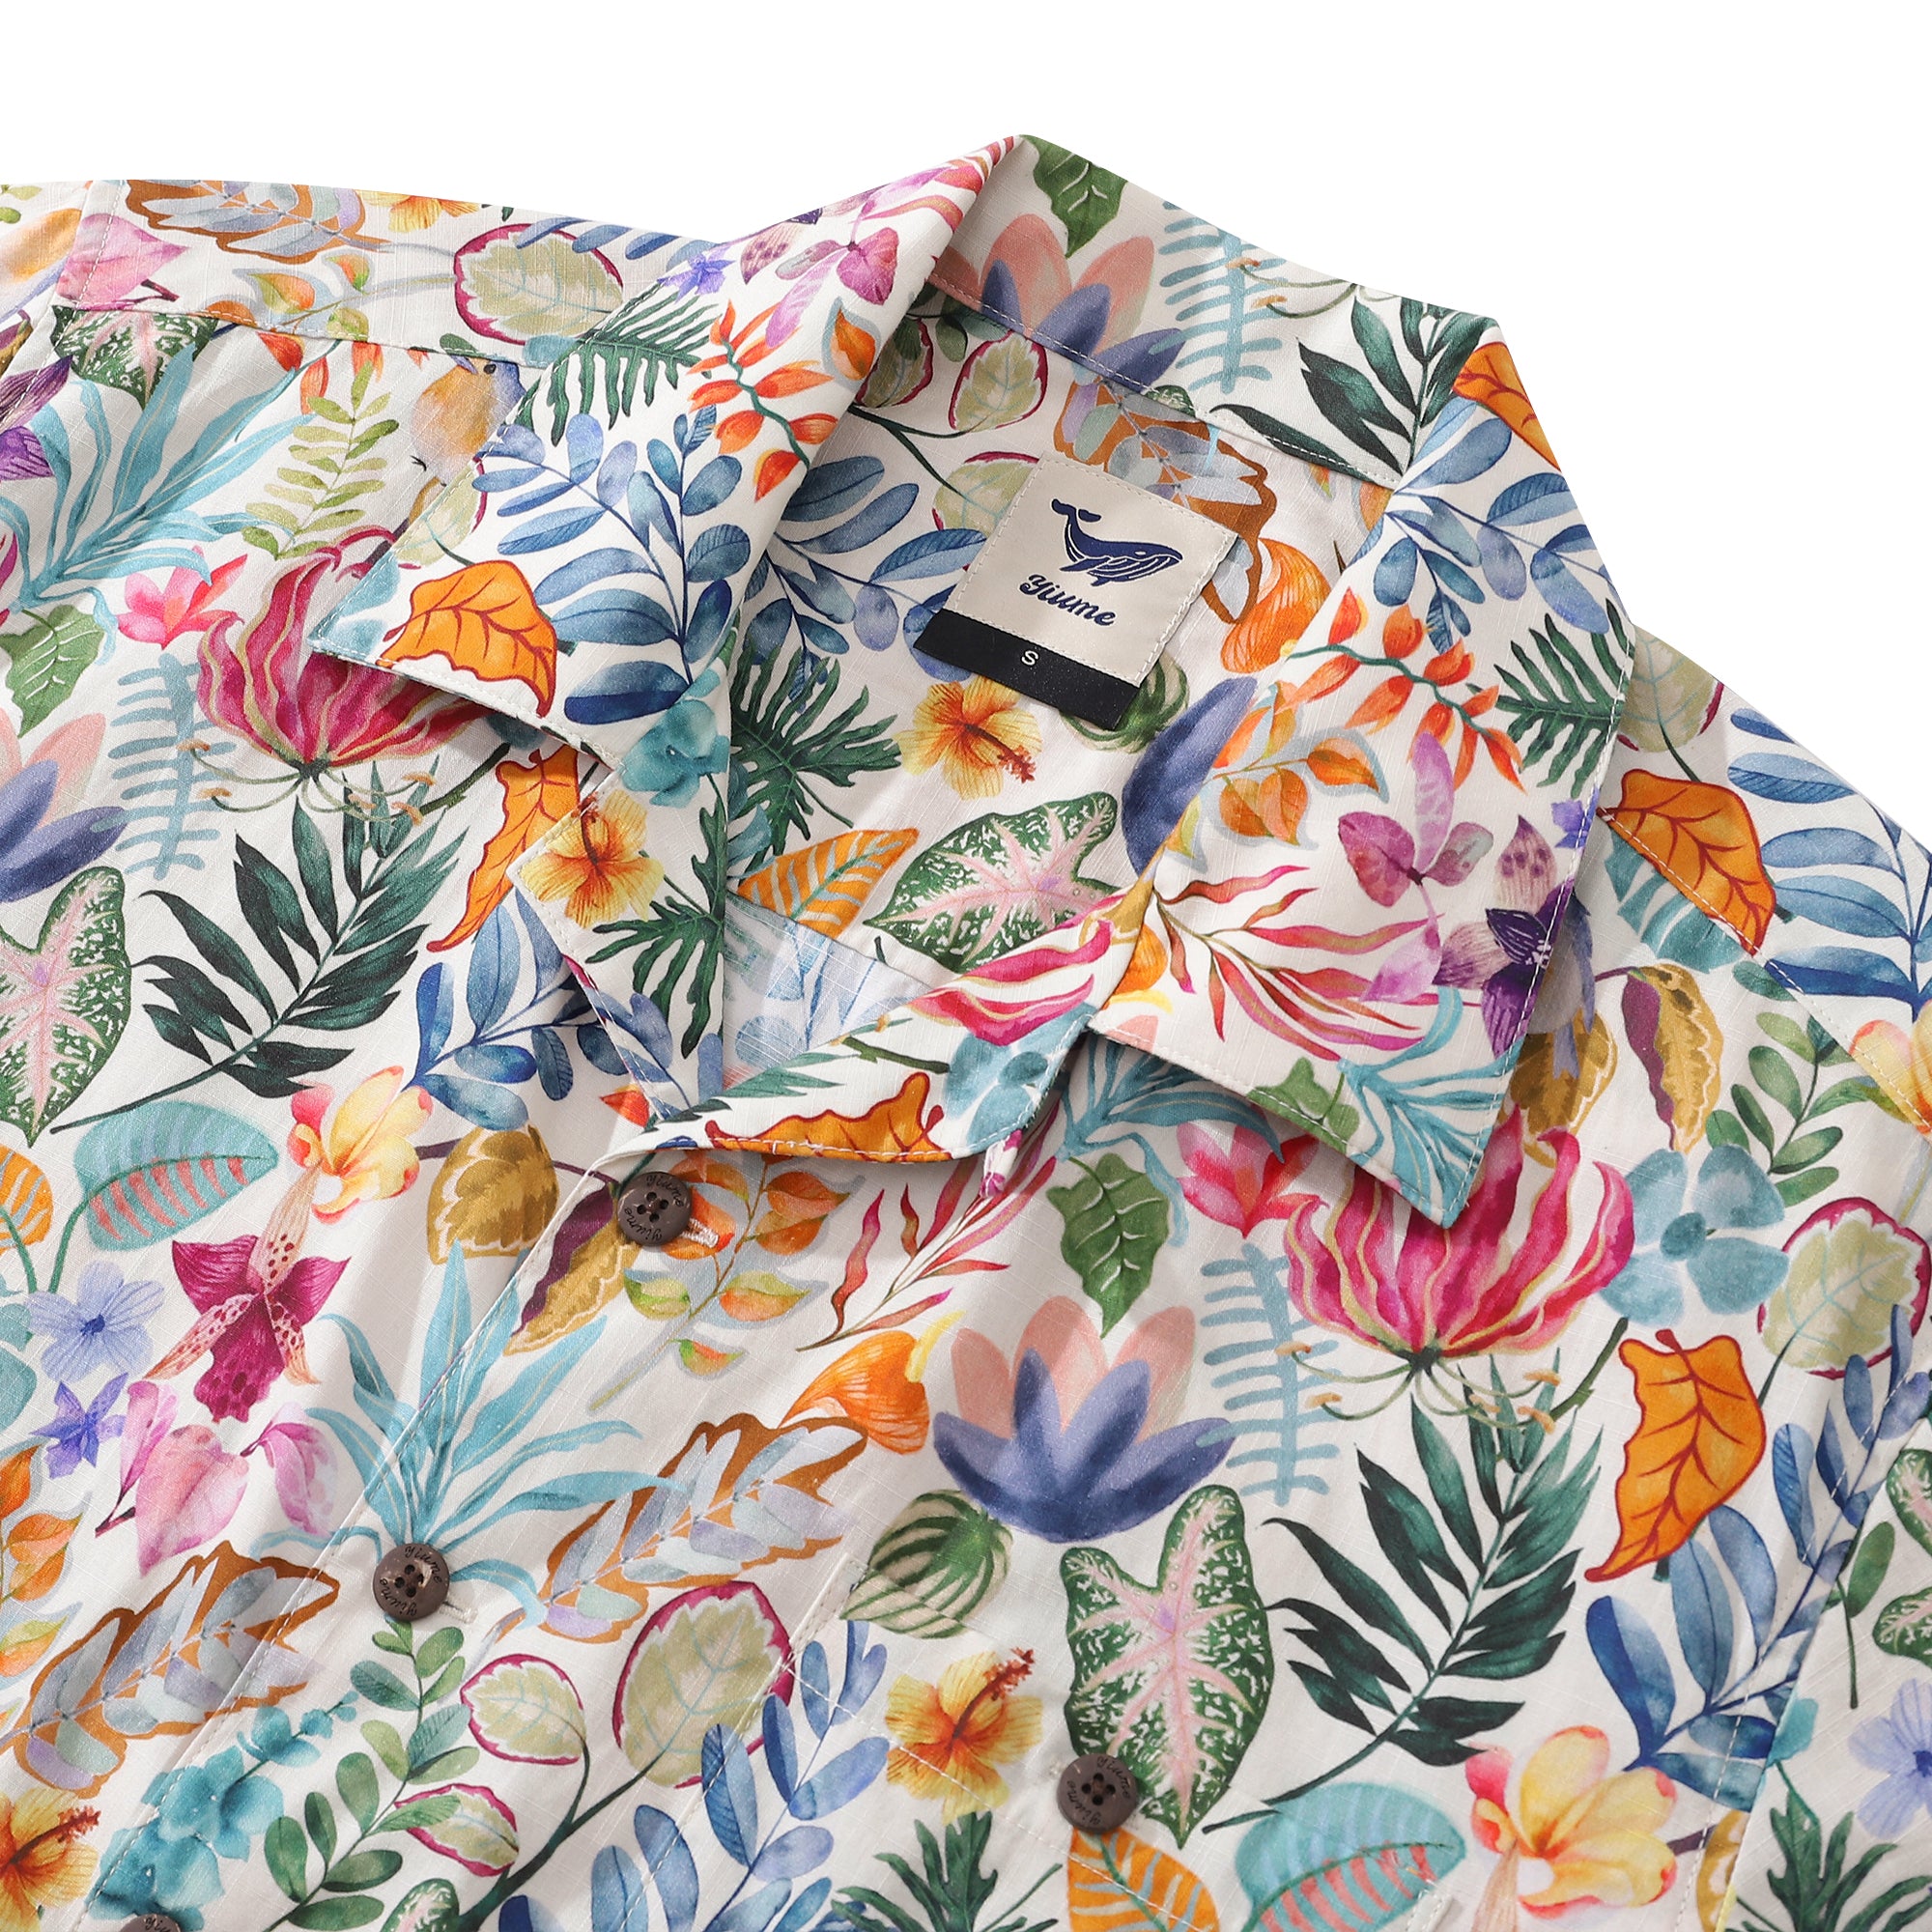 Camisa hawaiana vintage de los años 30 para hombre, camisa de jardín por la tarde, cuello de campamento, 100% algodón